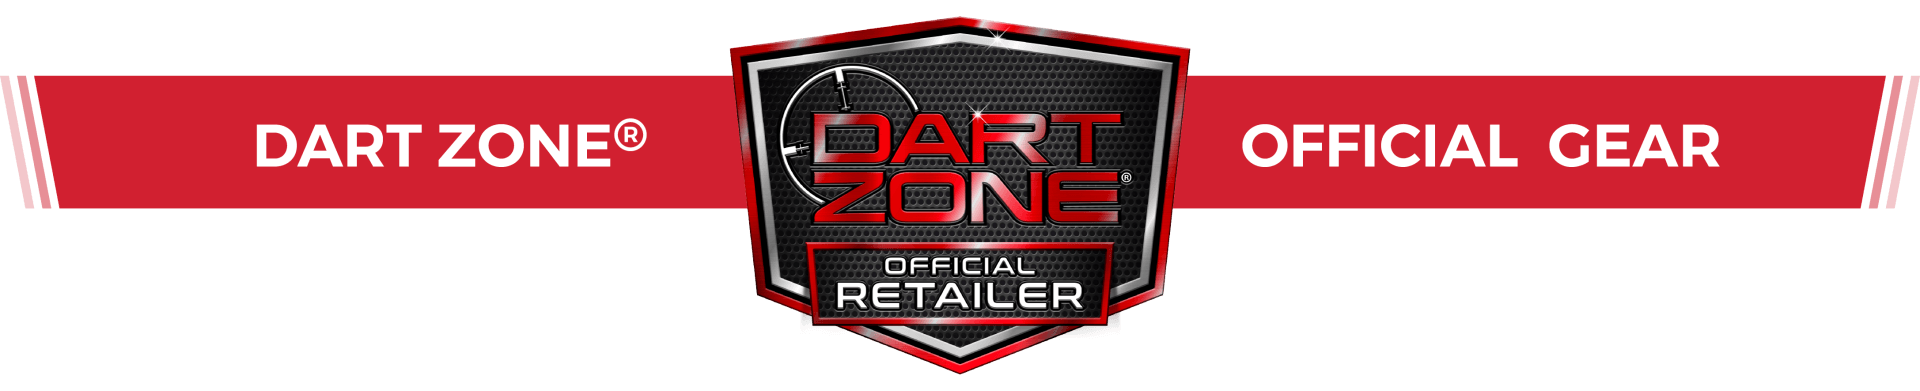 Dart Zone® Official Gear Retailer ,